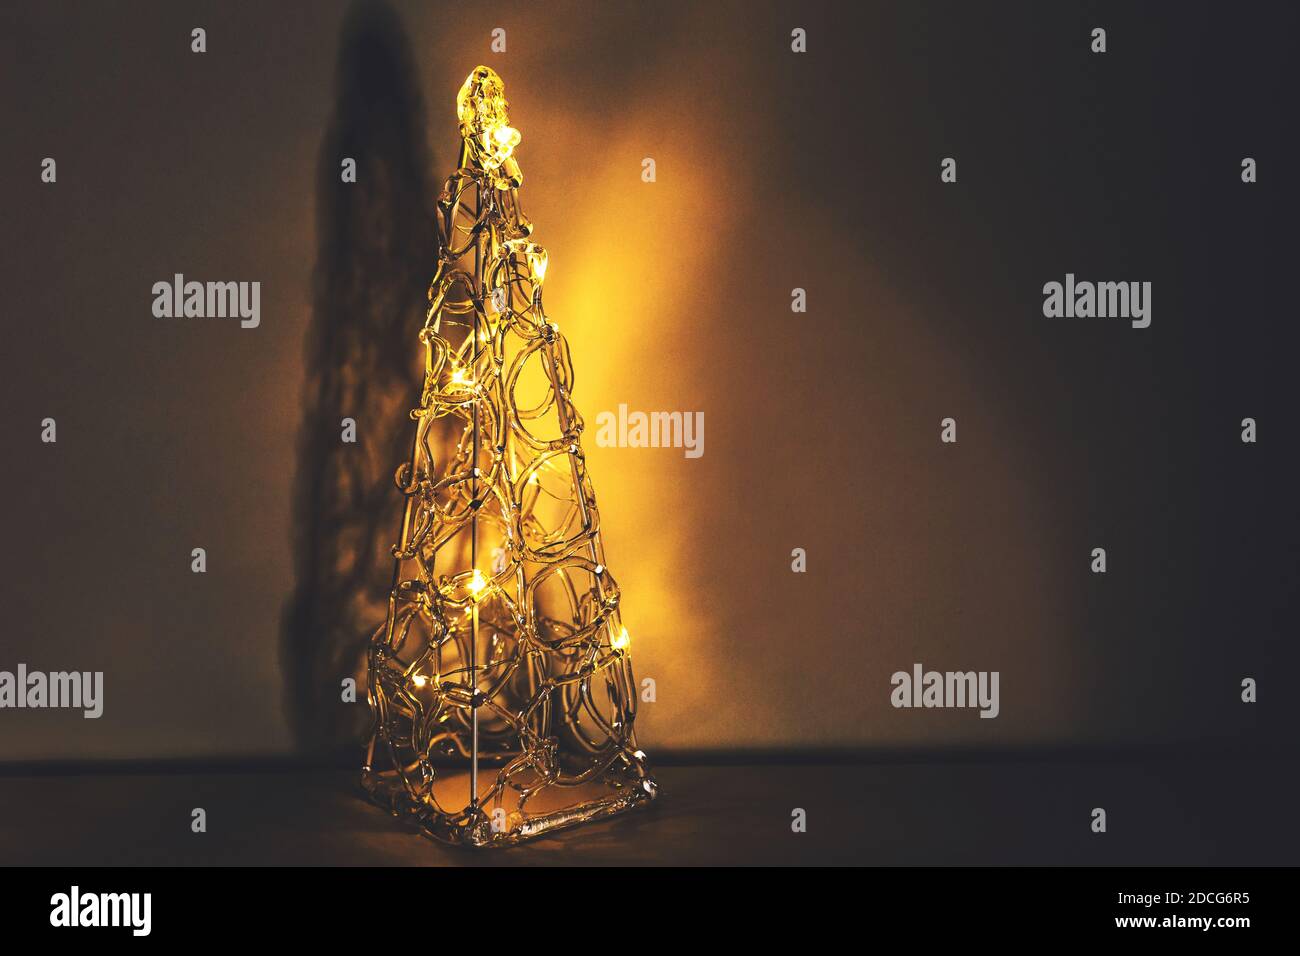 Bellissimo albero di natale decorativo brillante in plastica trasparente con illuminazione in caldi colori dorati Foto Stock